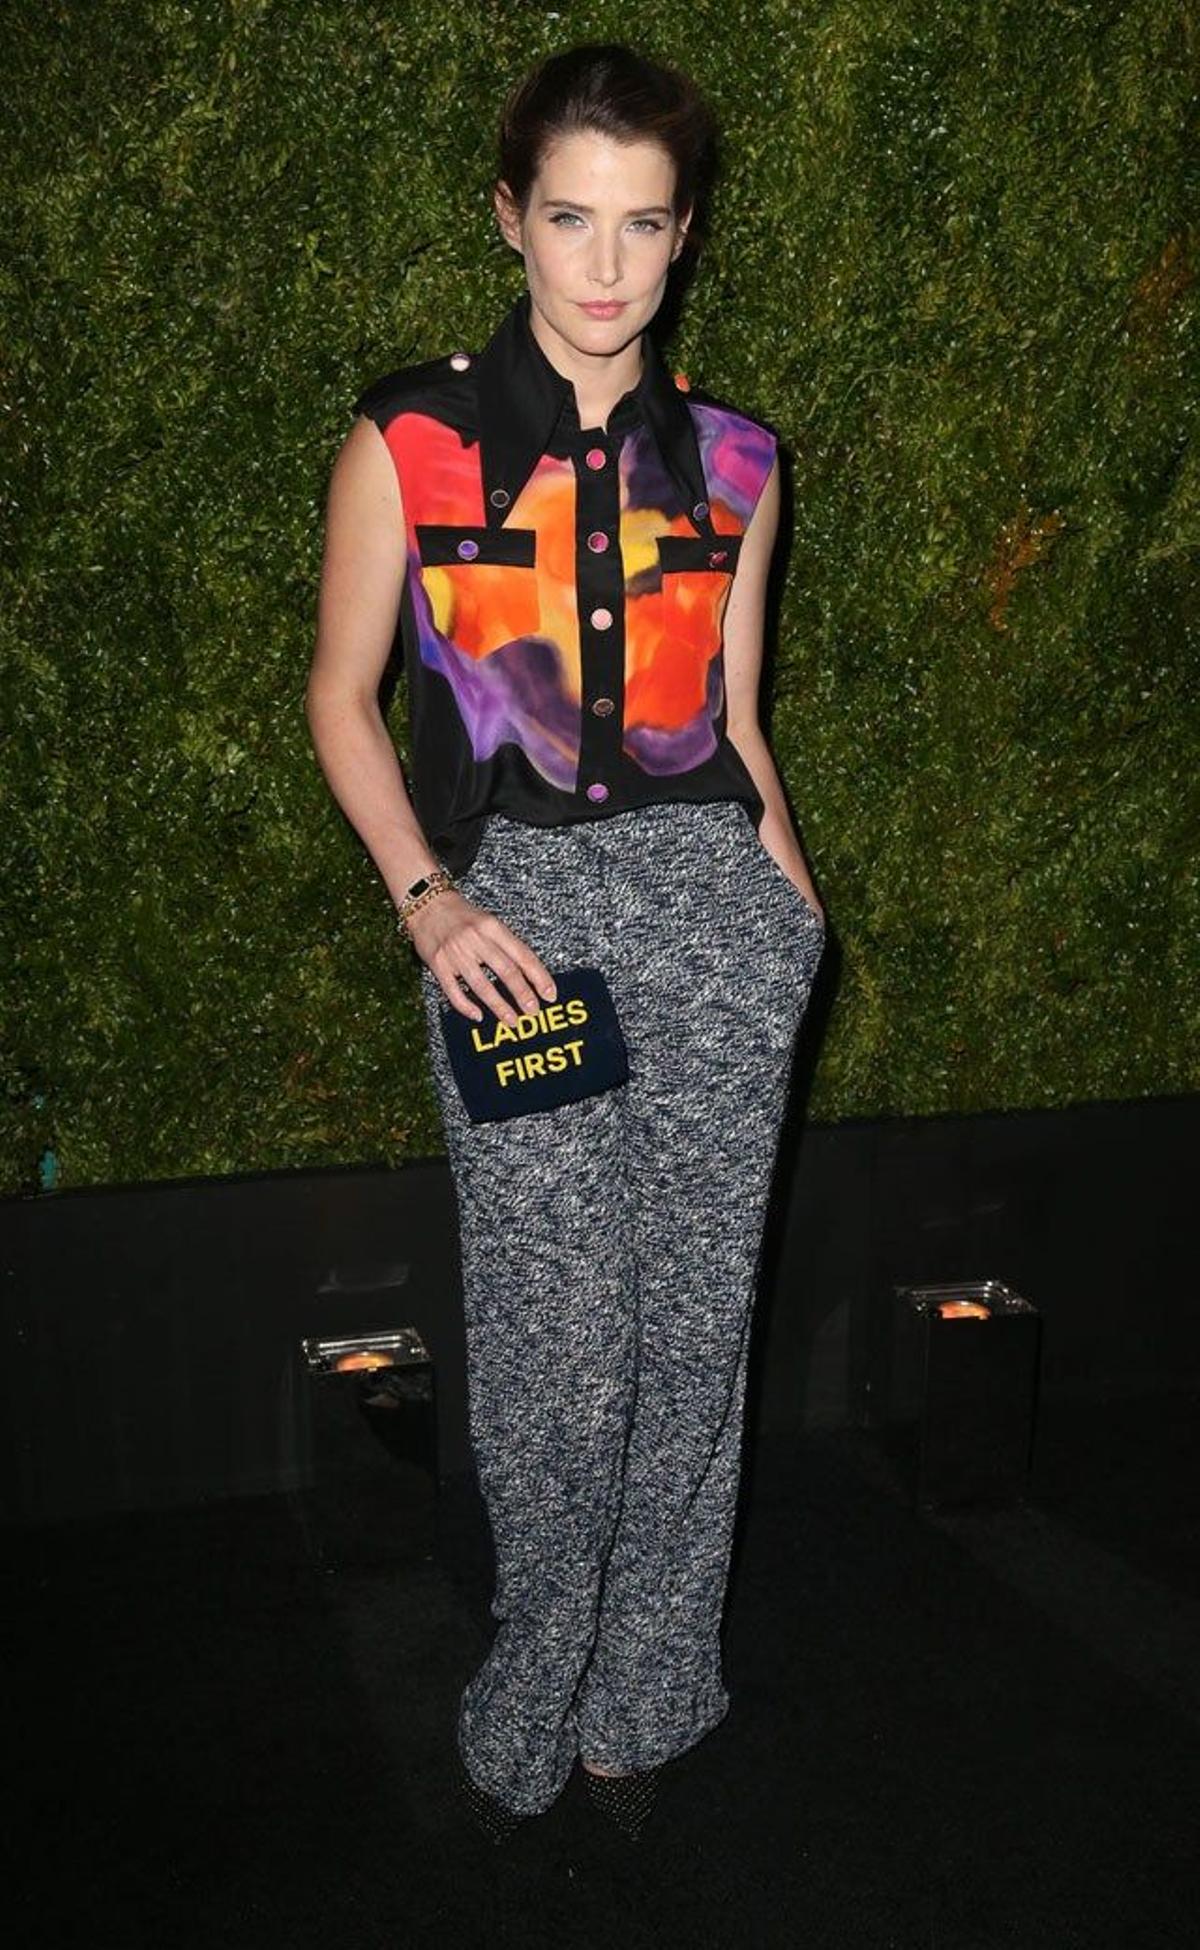 Cobbie Smulders en la décima edición de la Cena de los Artistas de Chanel